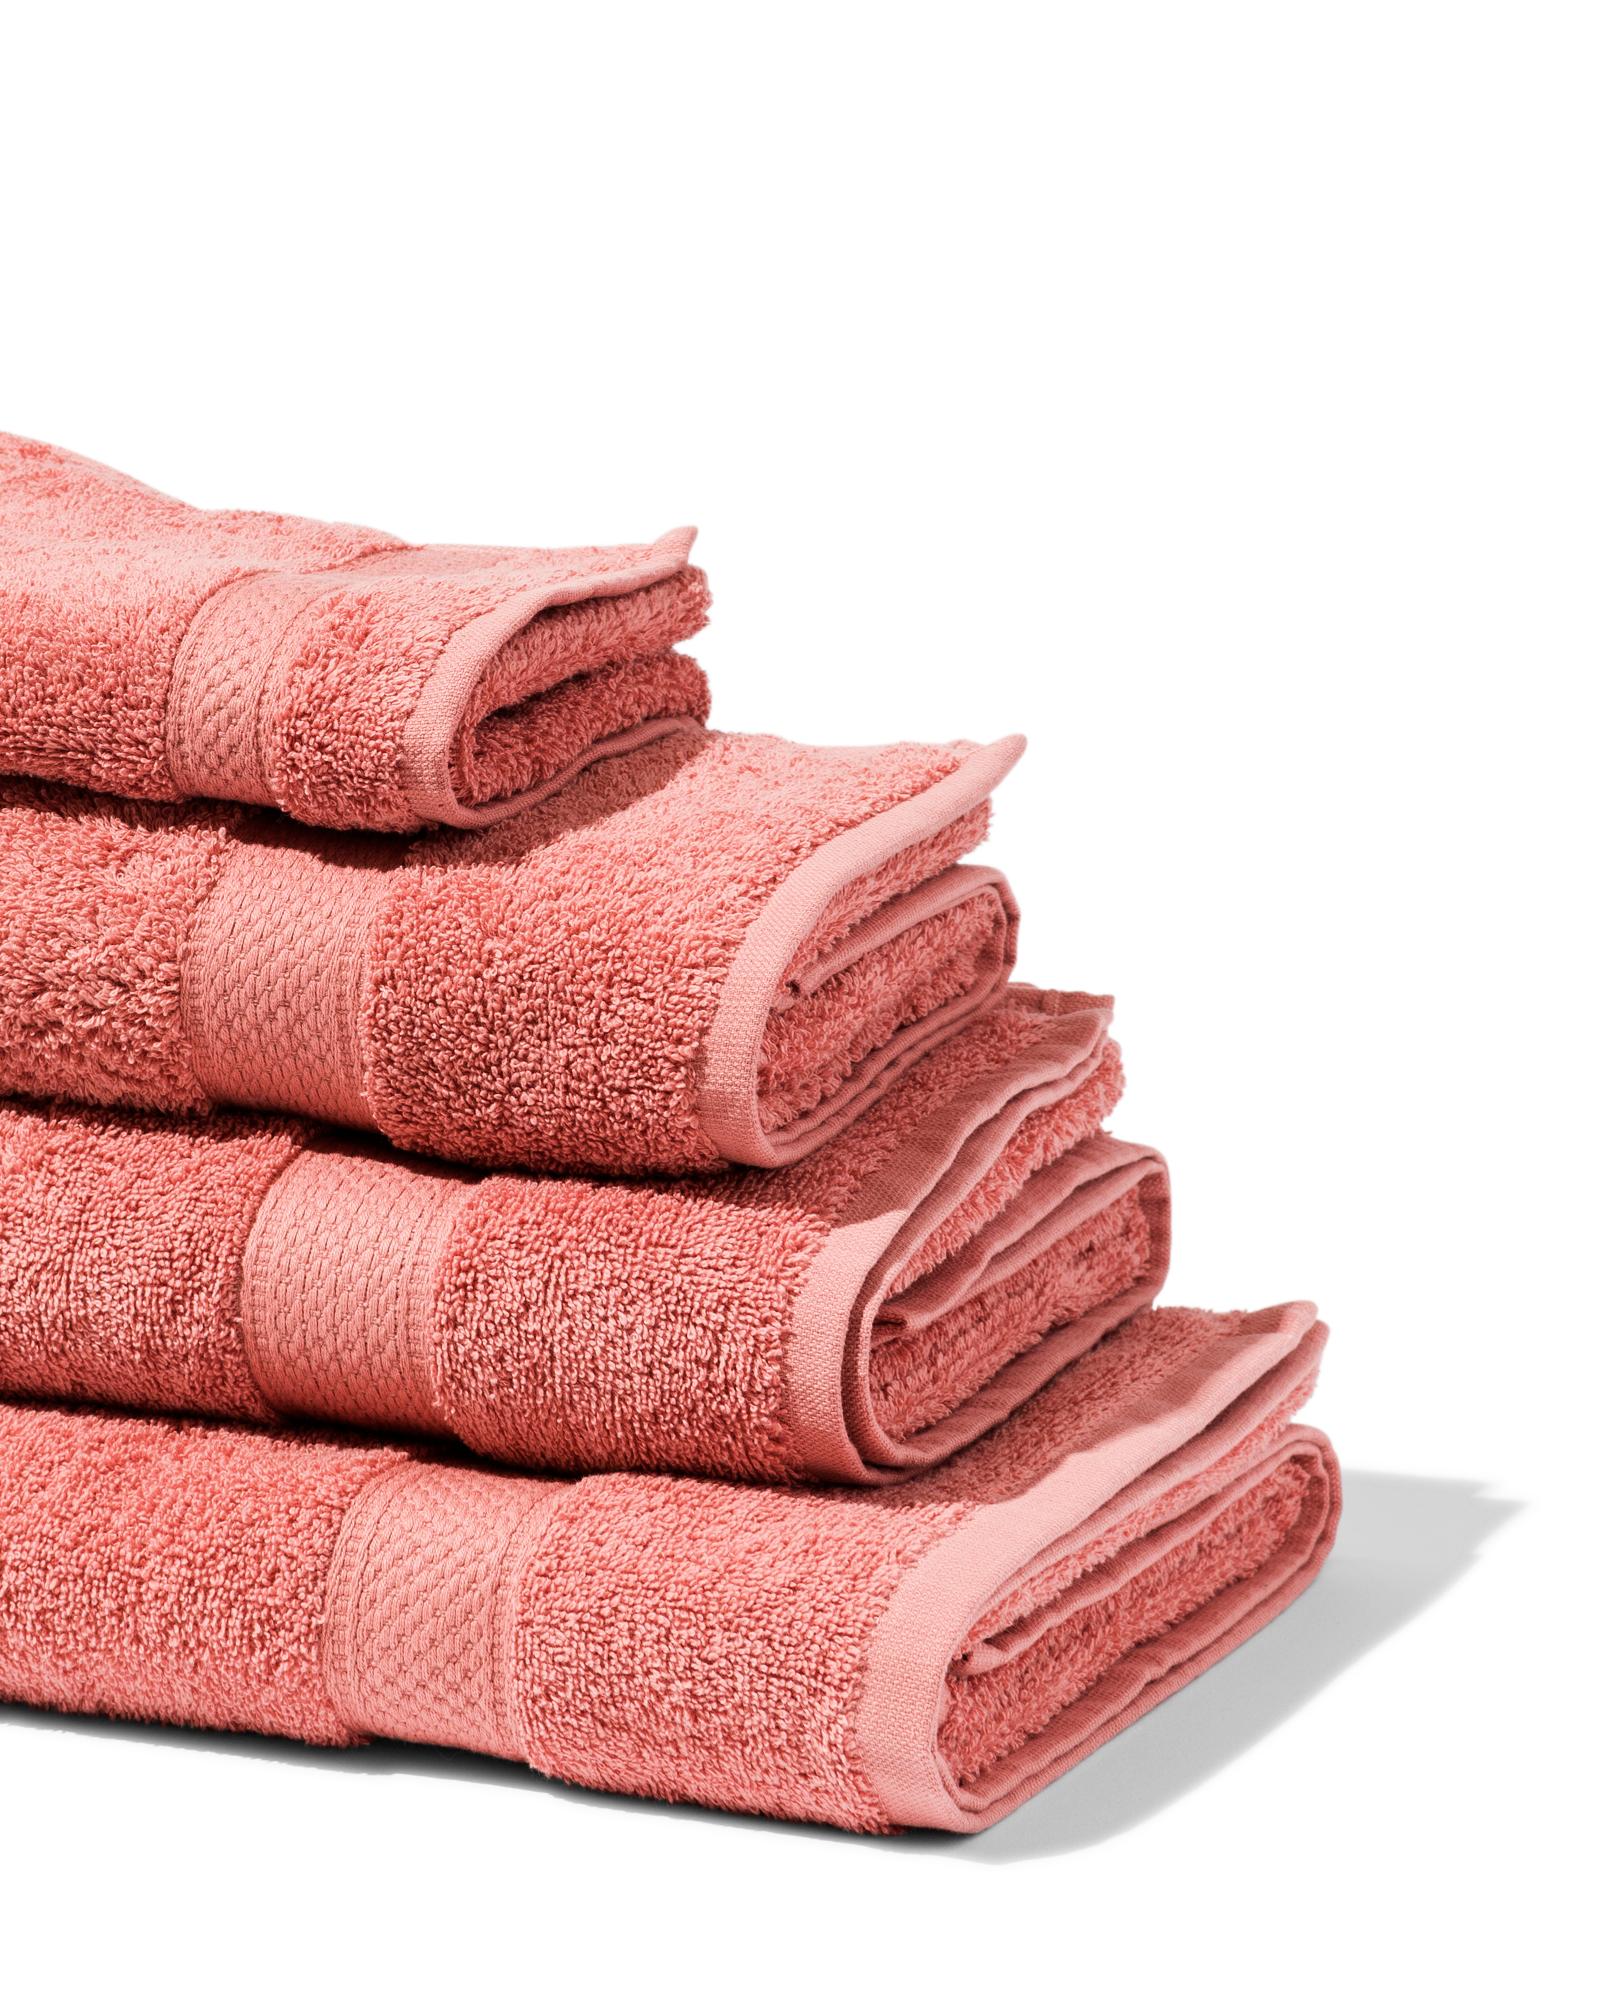 serviettes de bain épaisses roses